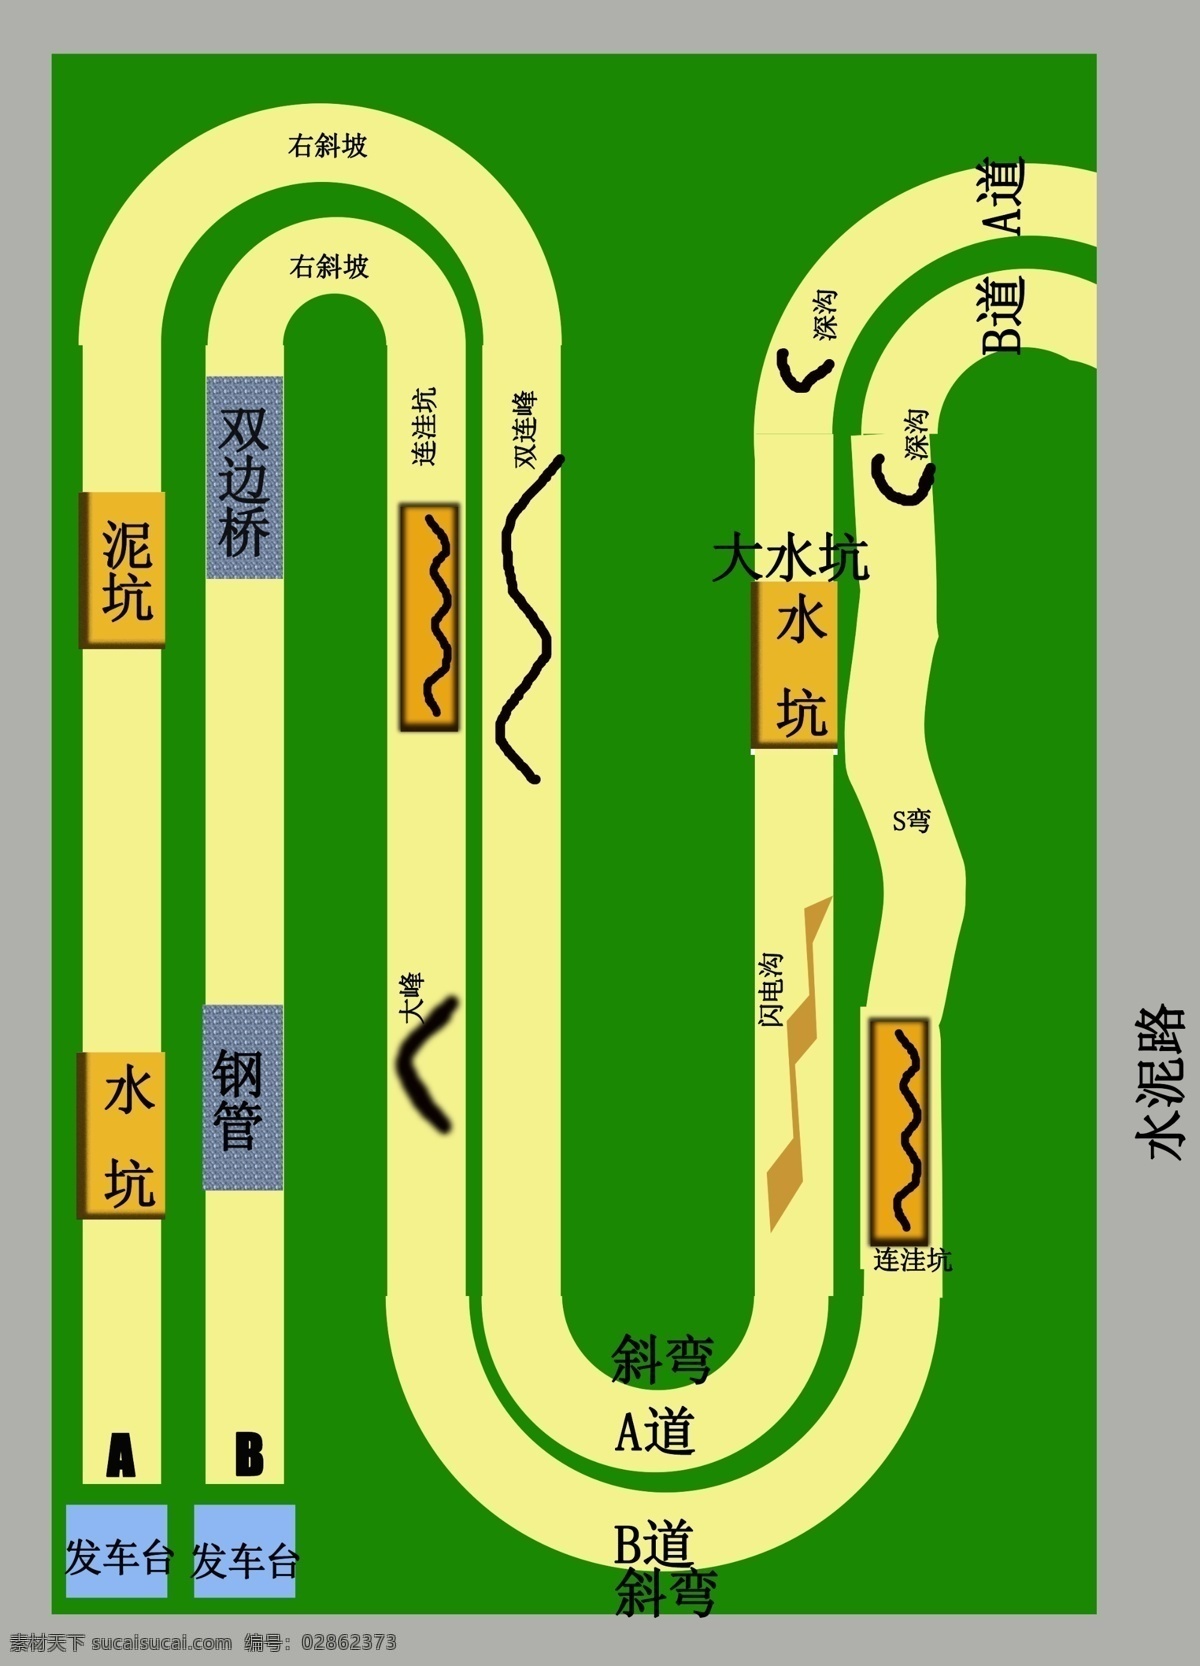 越野 挑战赛 车道 赛道 原创 环境设计 效果图 绿色